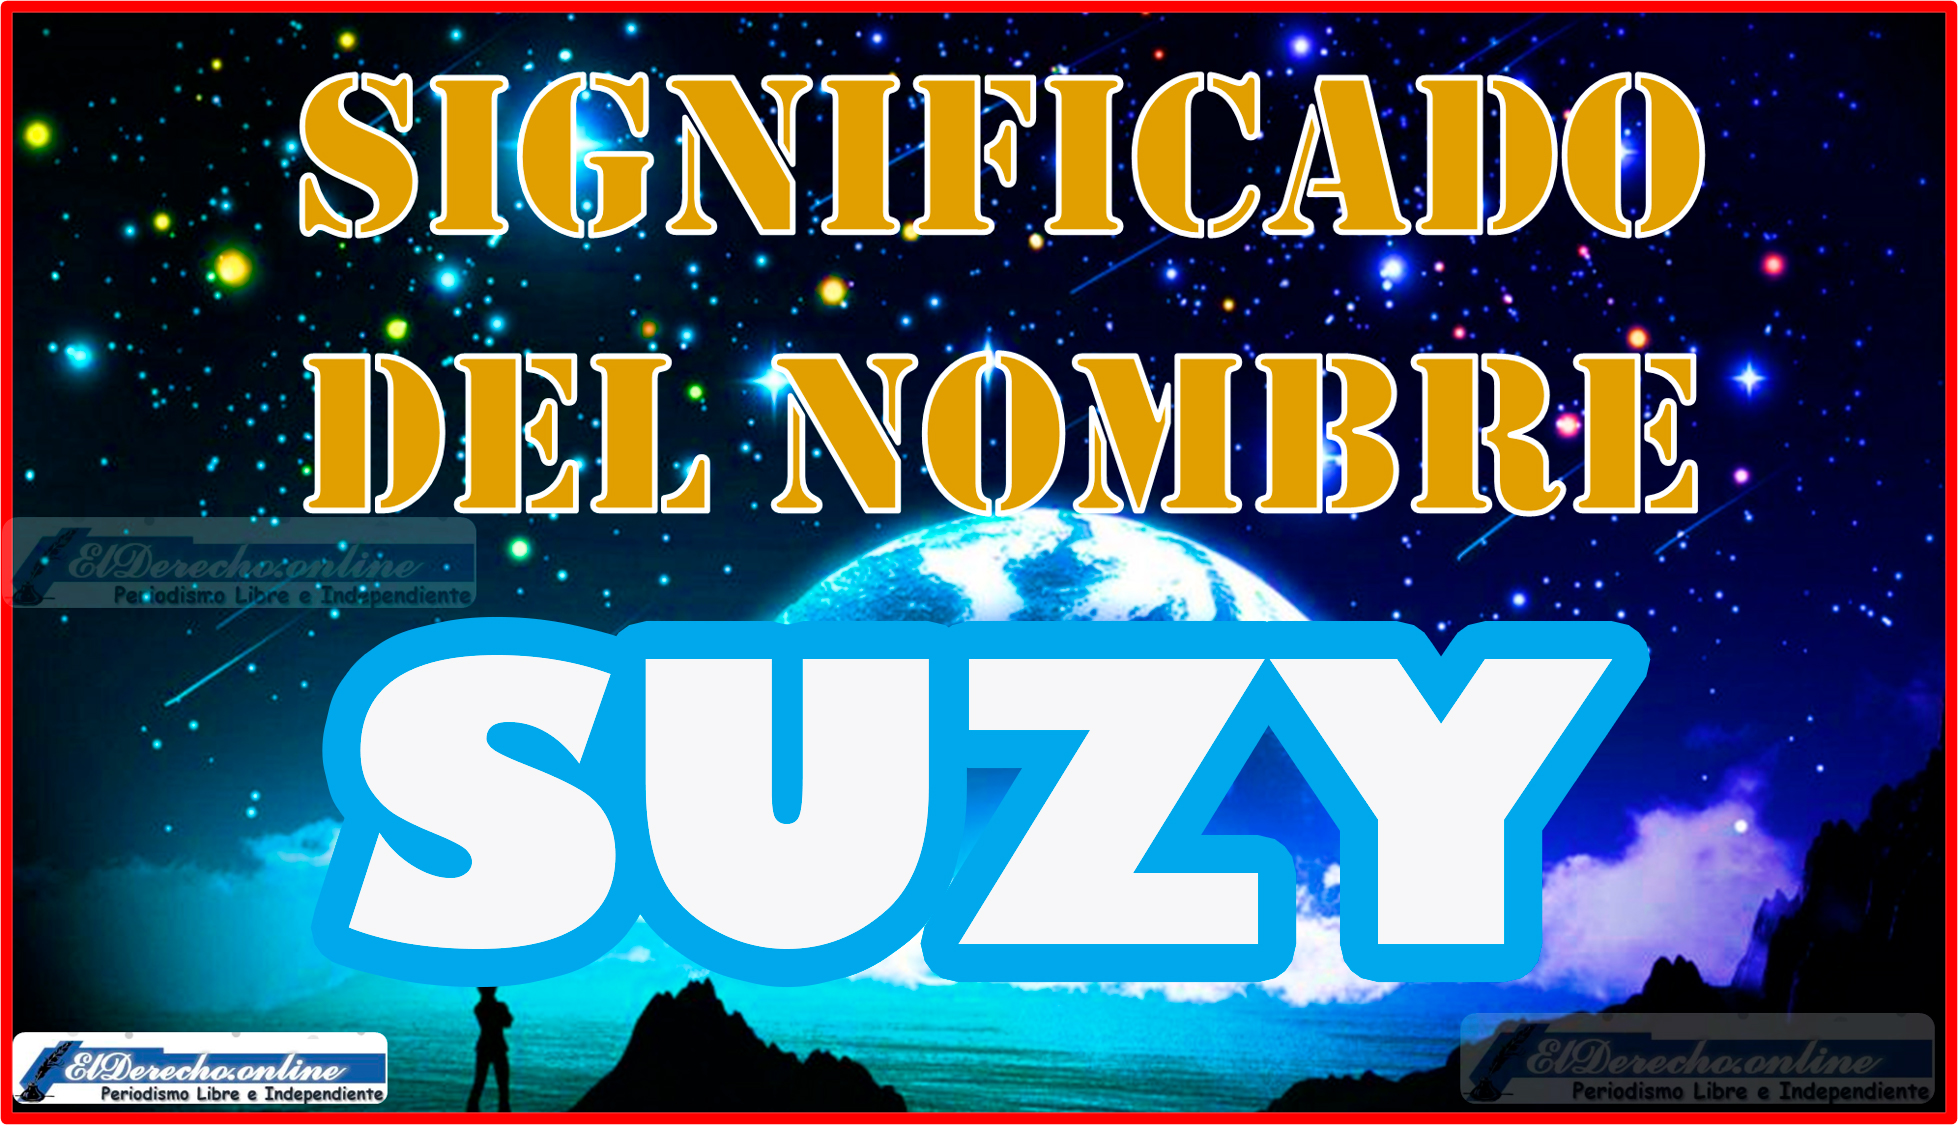 Significado del nombre Suzy, su origen y más